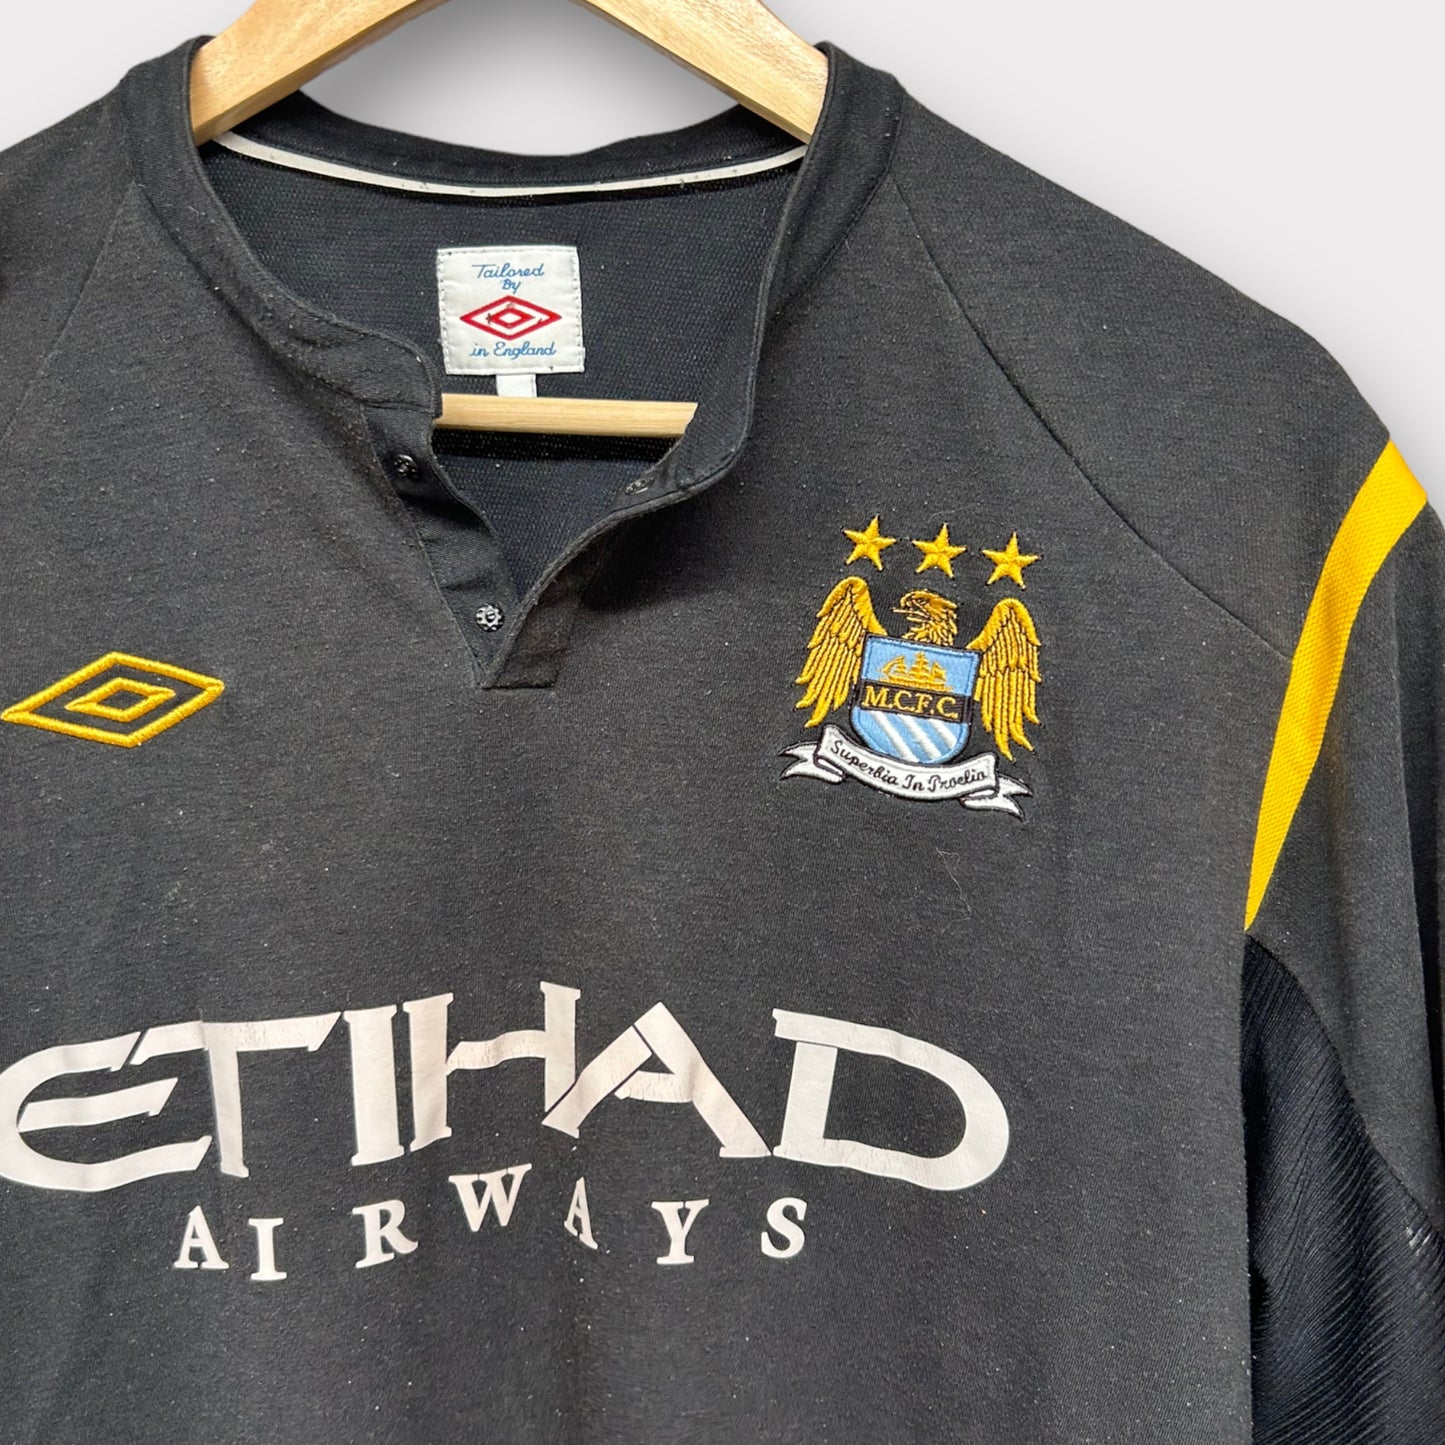 Manchester City 2009/10 Away Shirt (L)